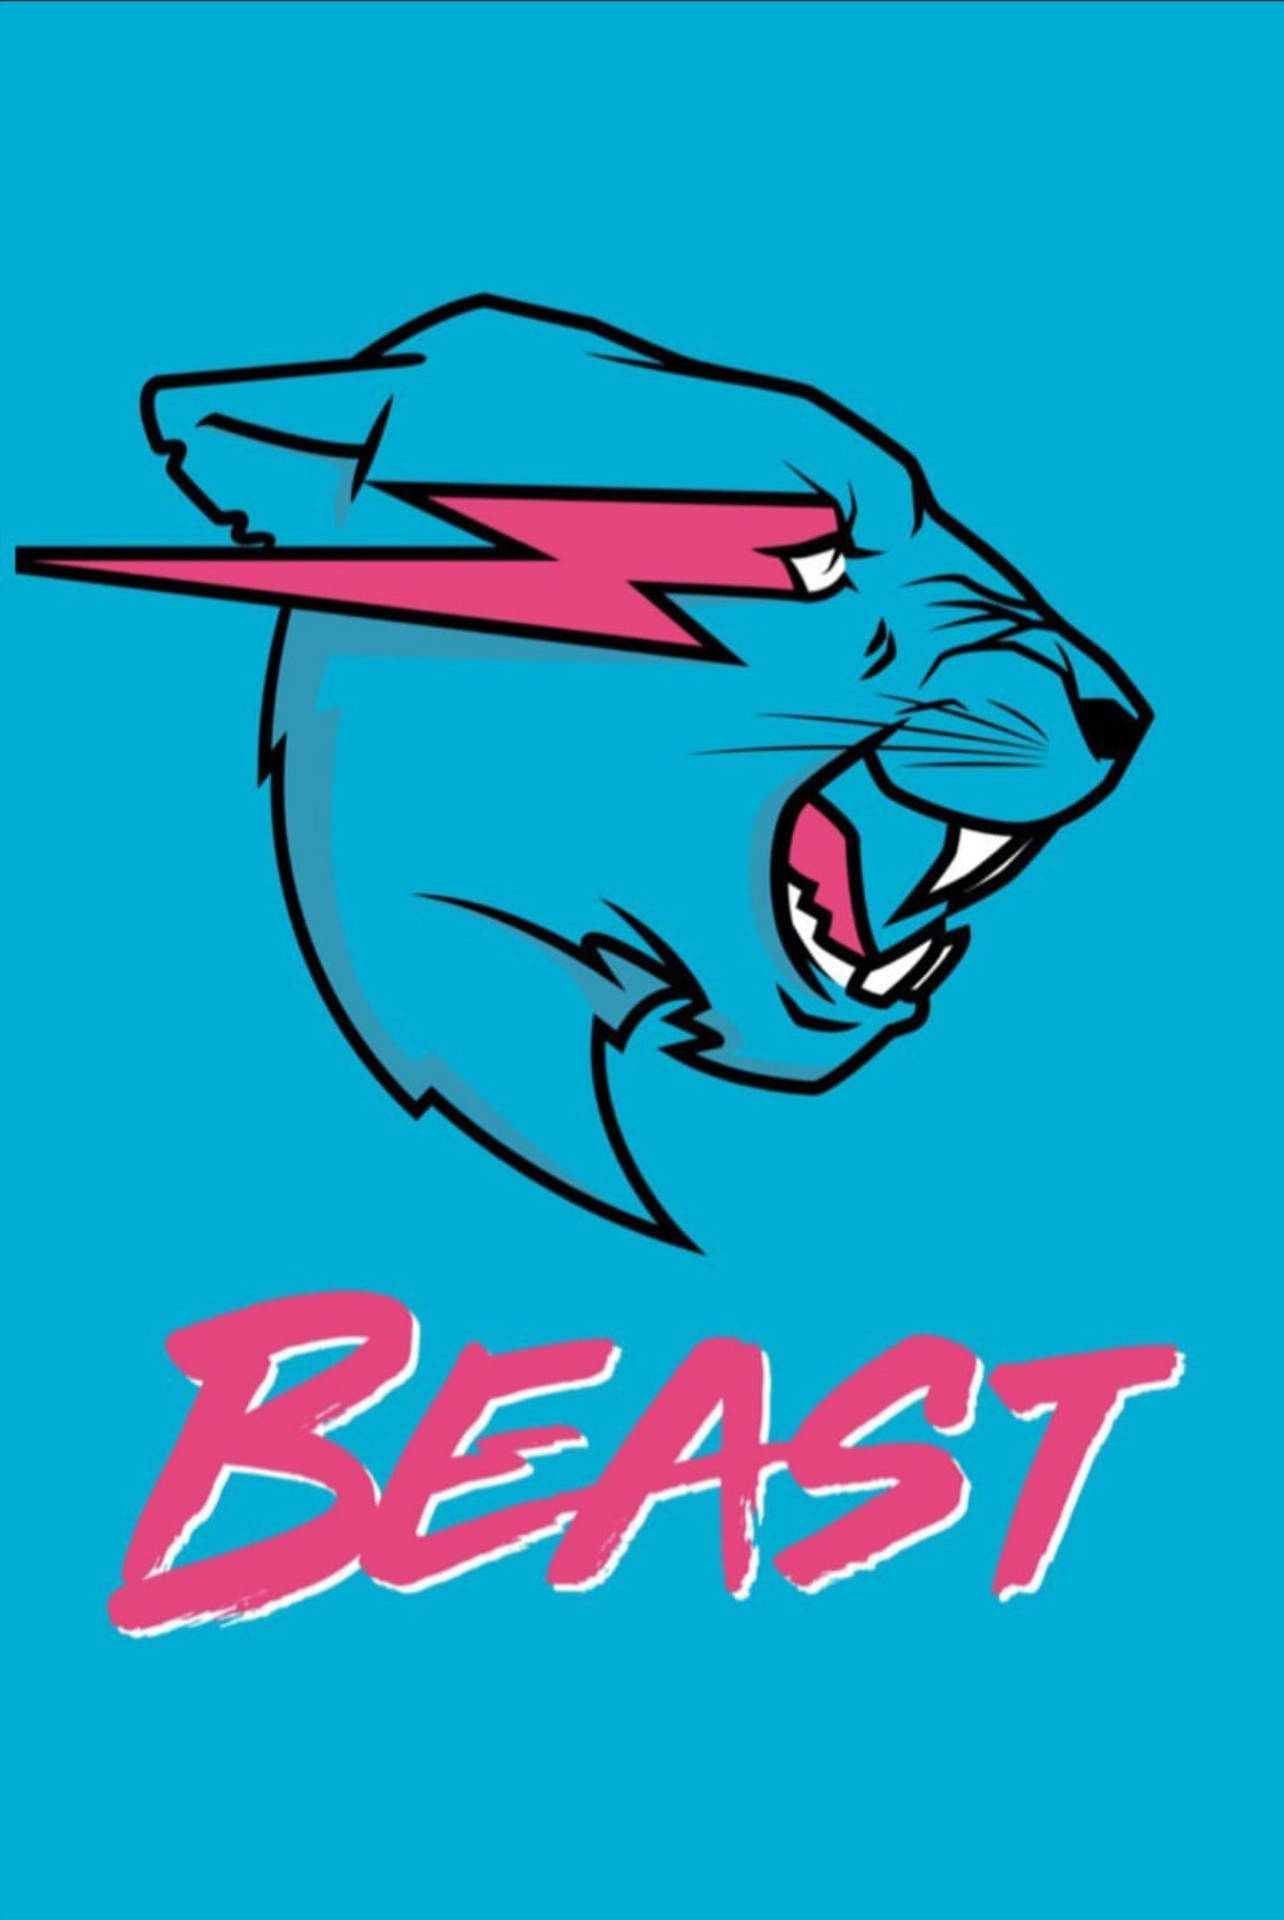 Mrbeast-logotyp På Blå Bakgrund. Wallpaper